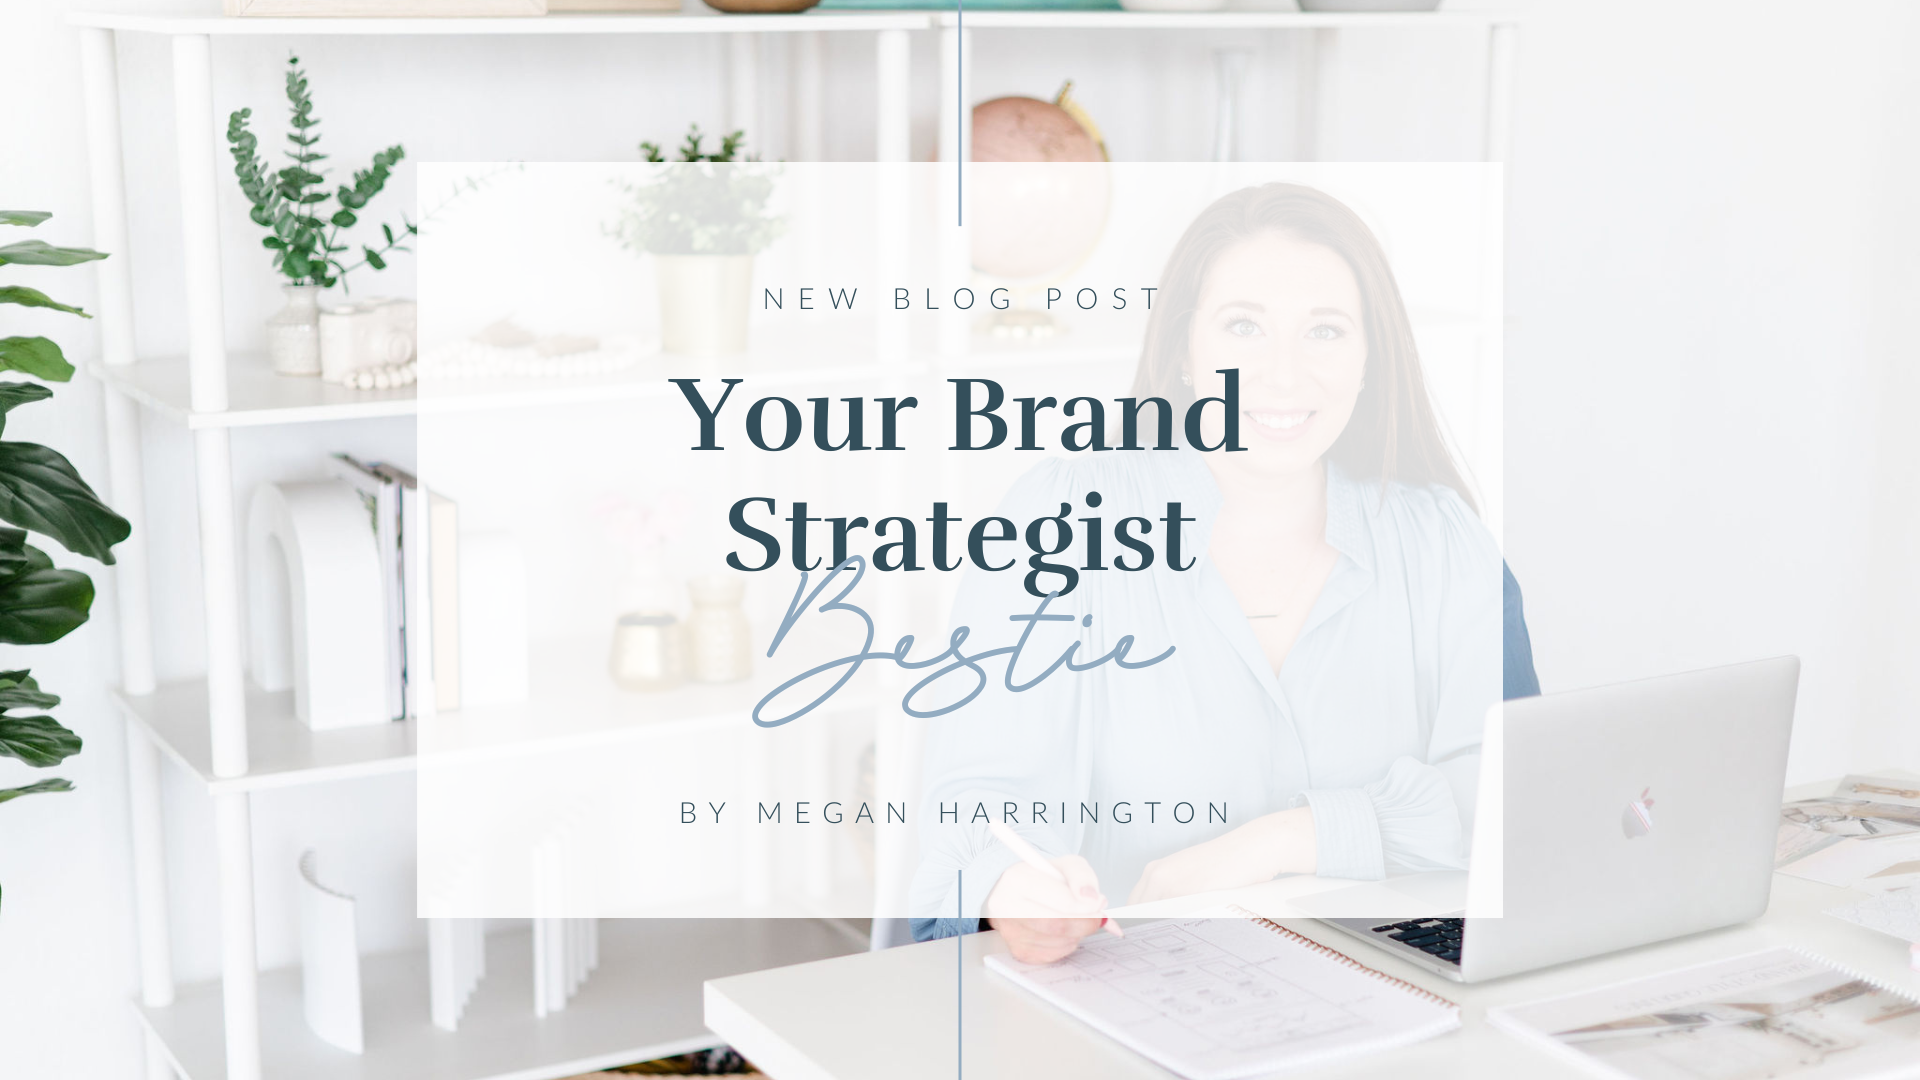 Your Brand Strategist Bestie